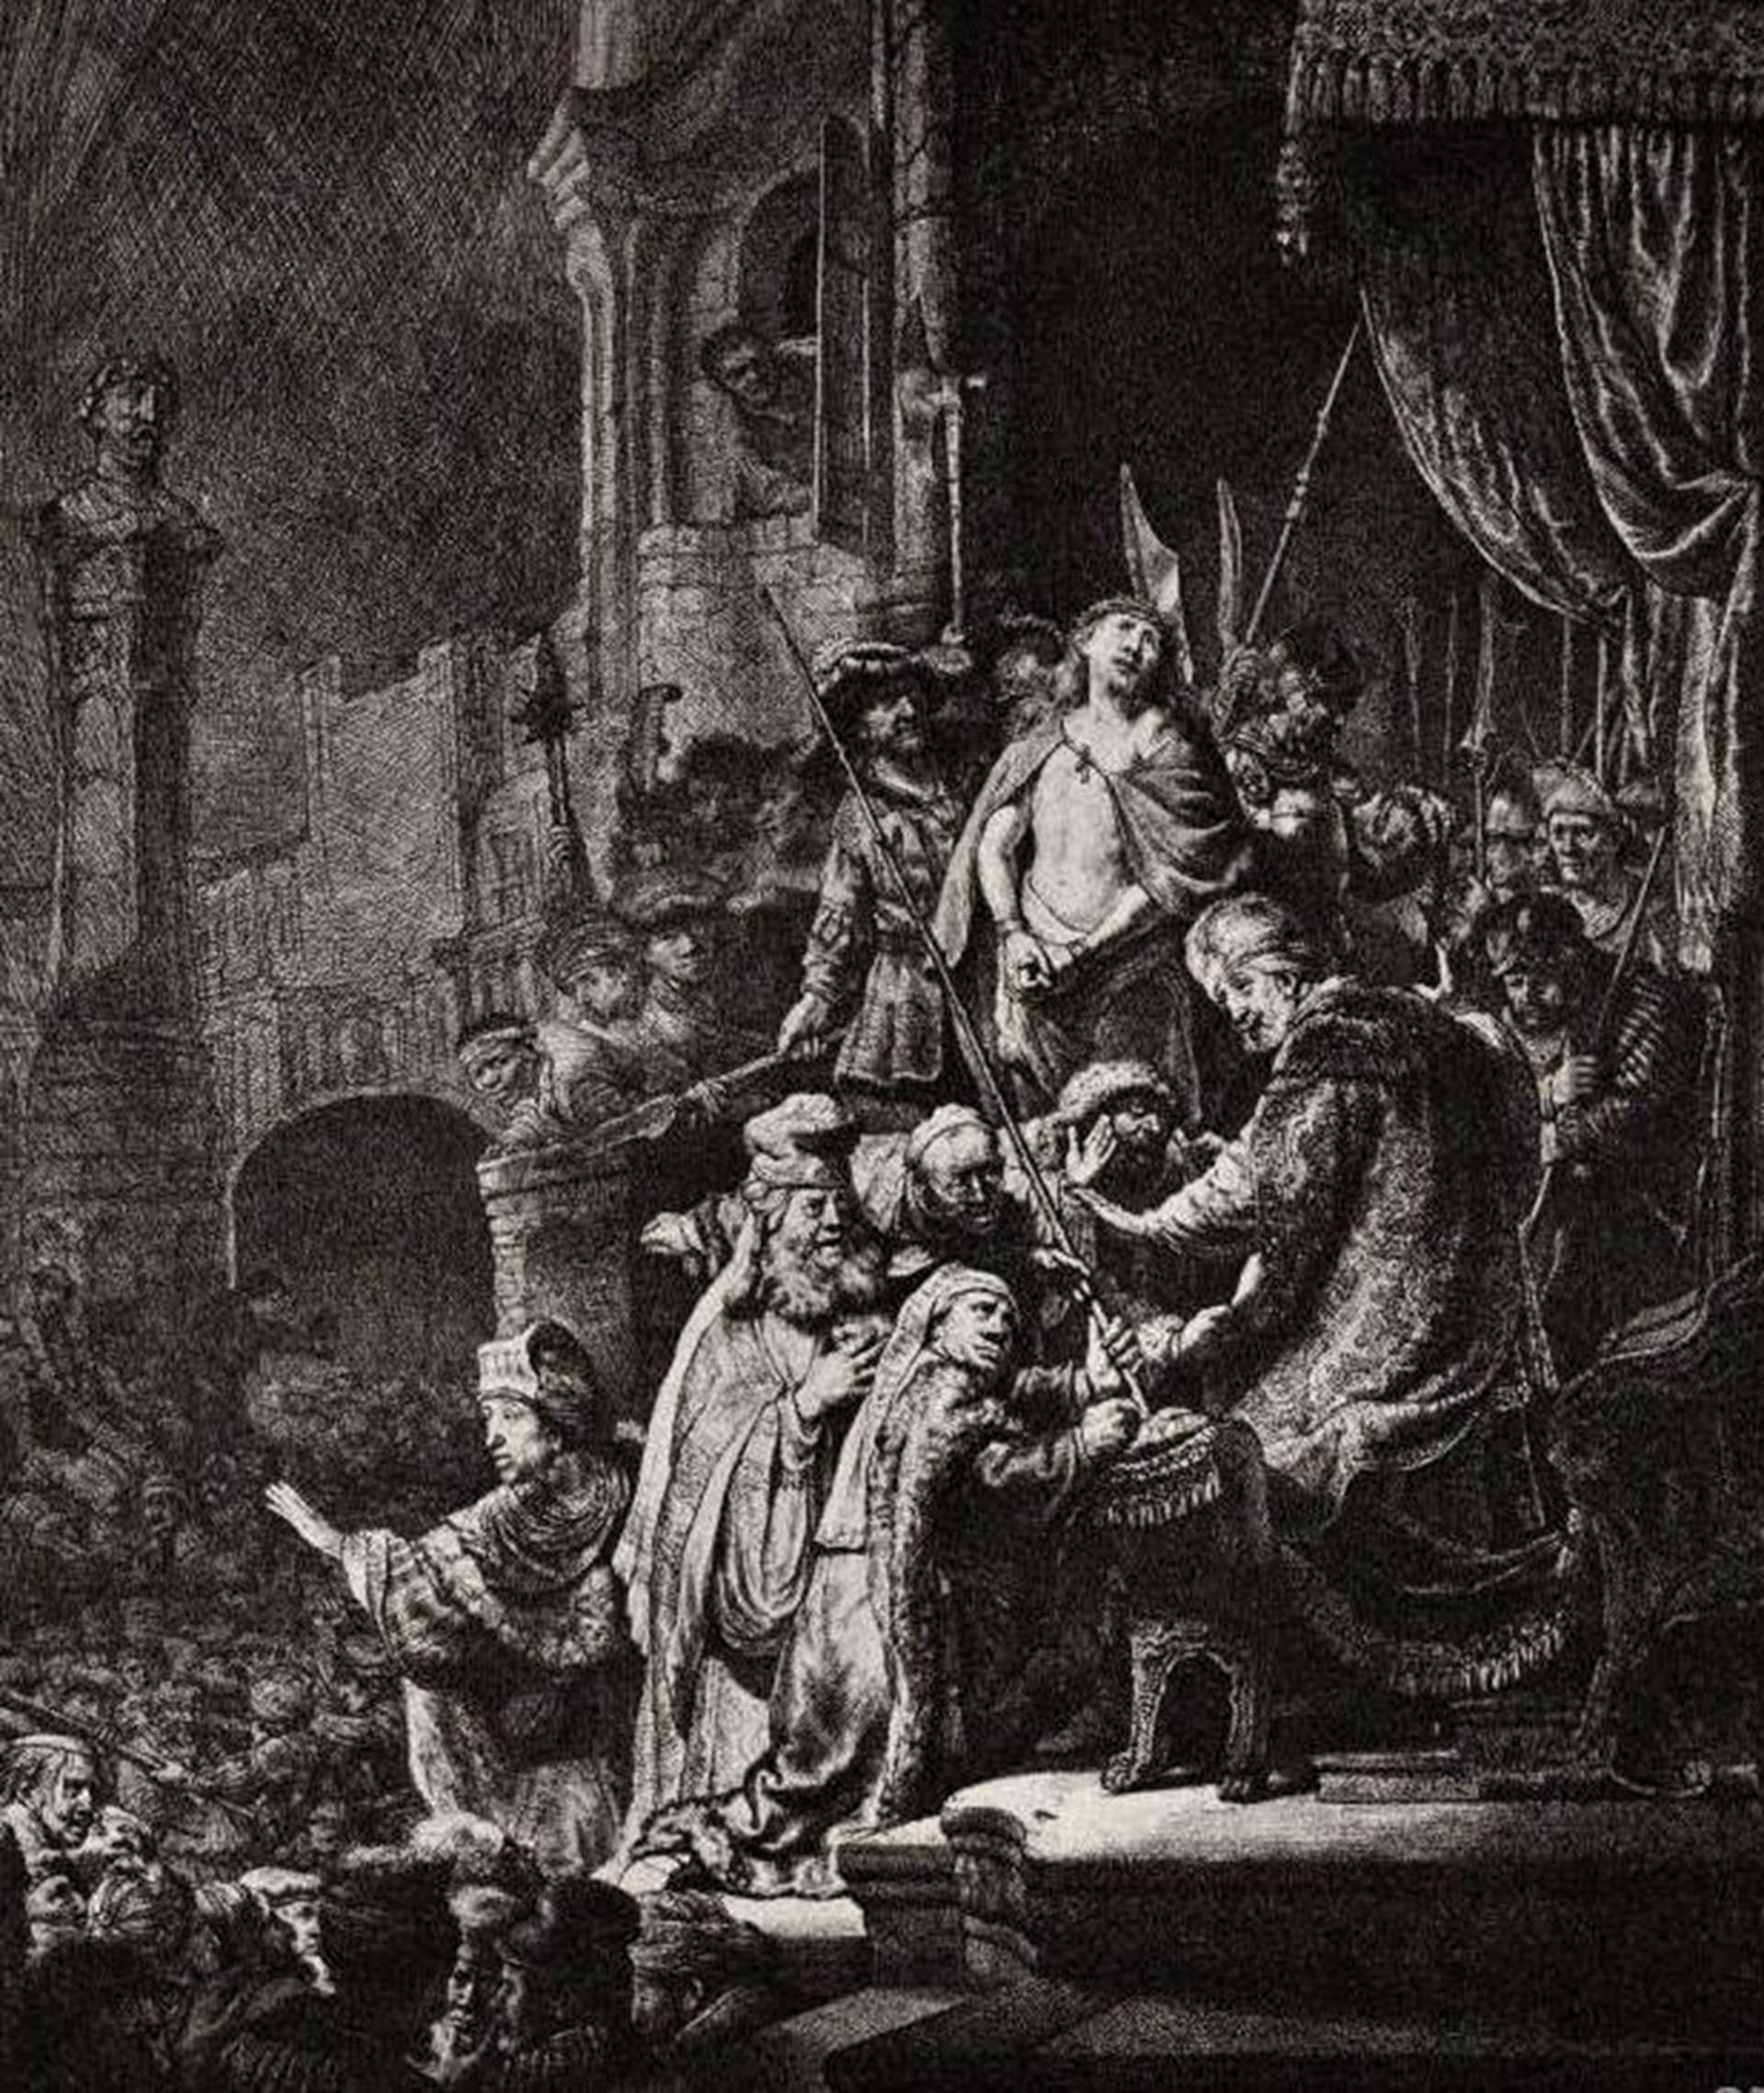 EcceHomo by Rembrandt